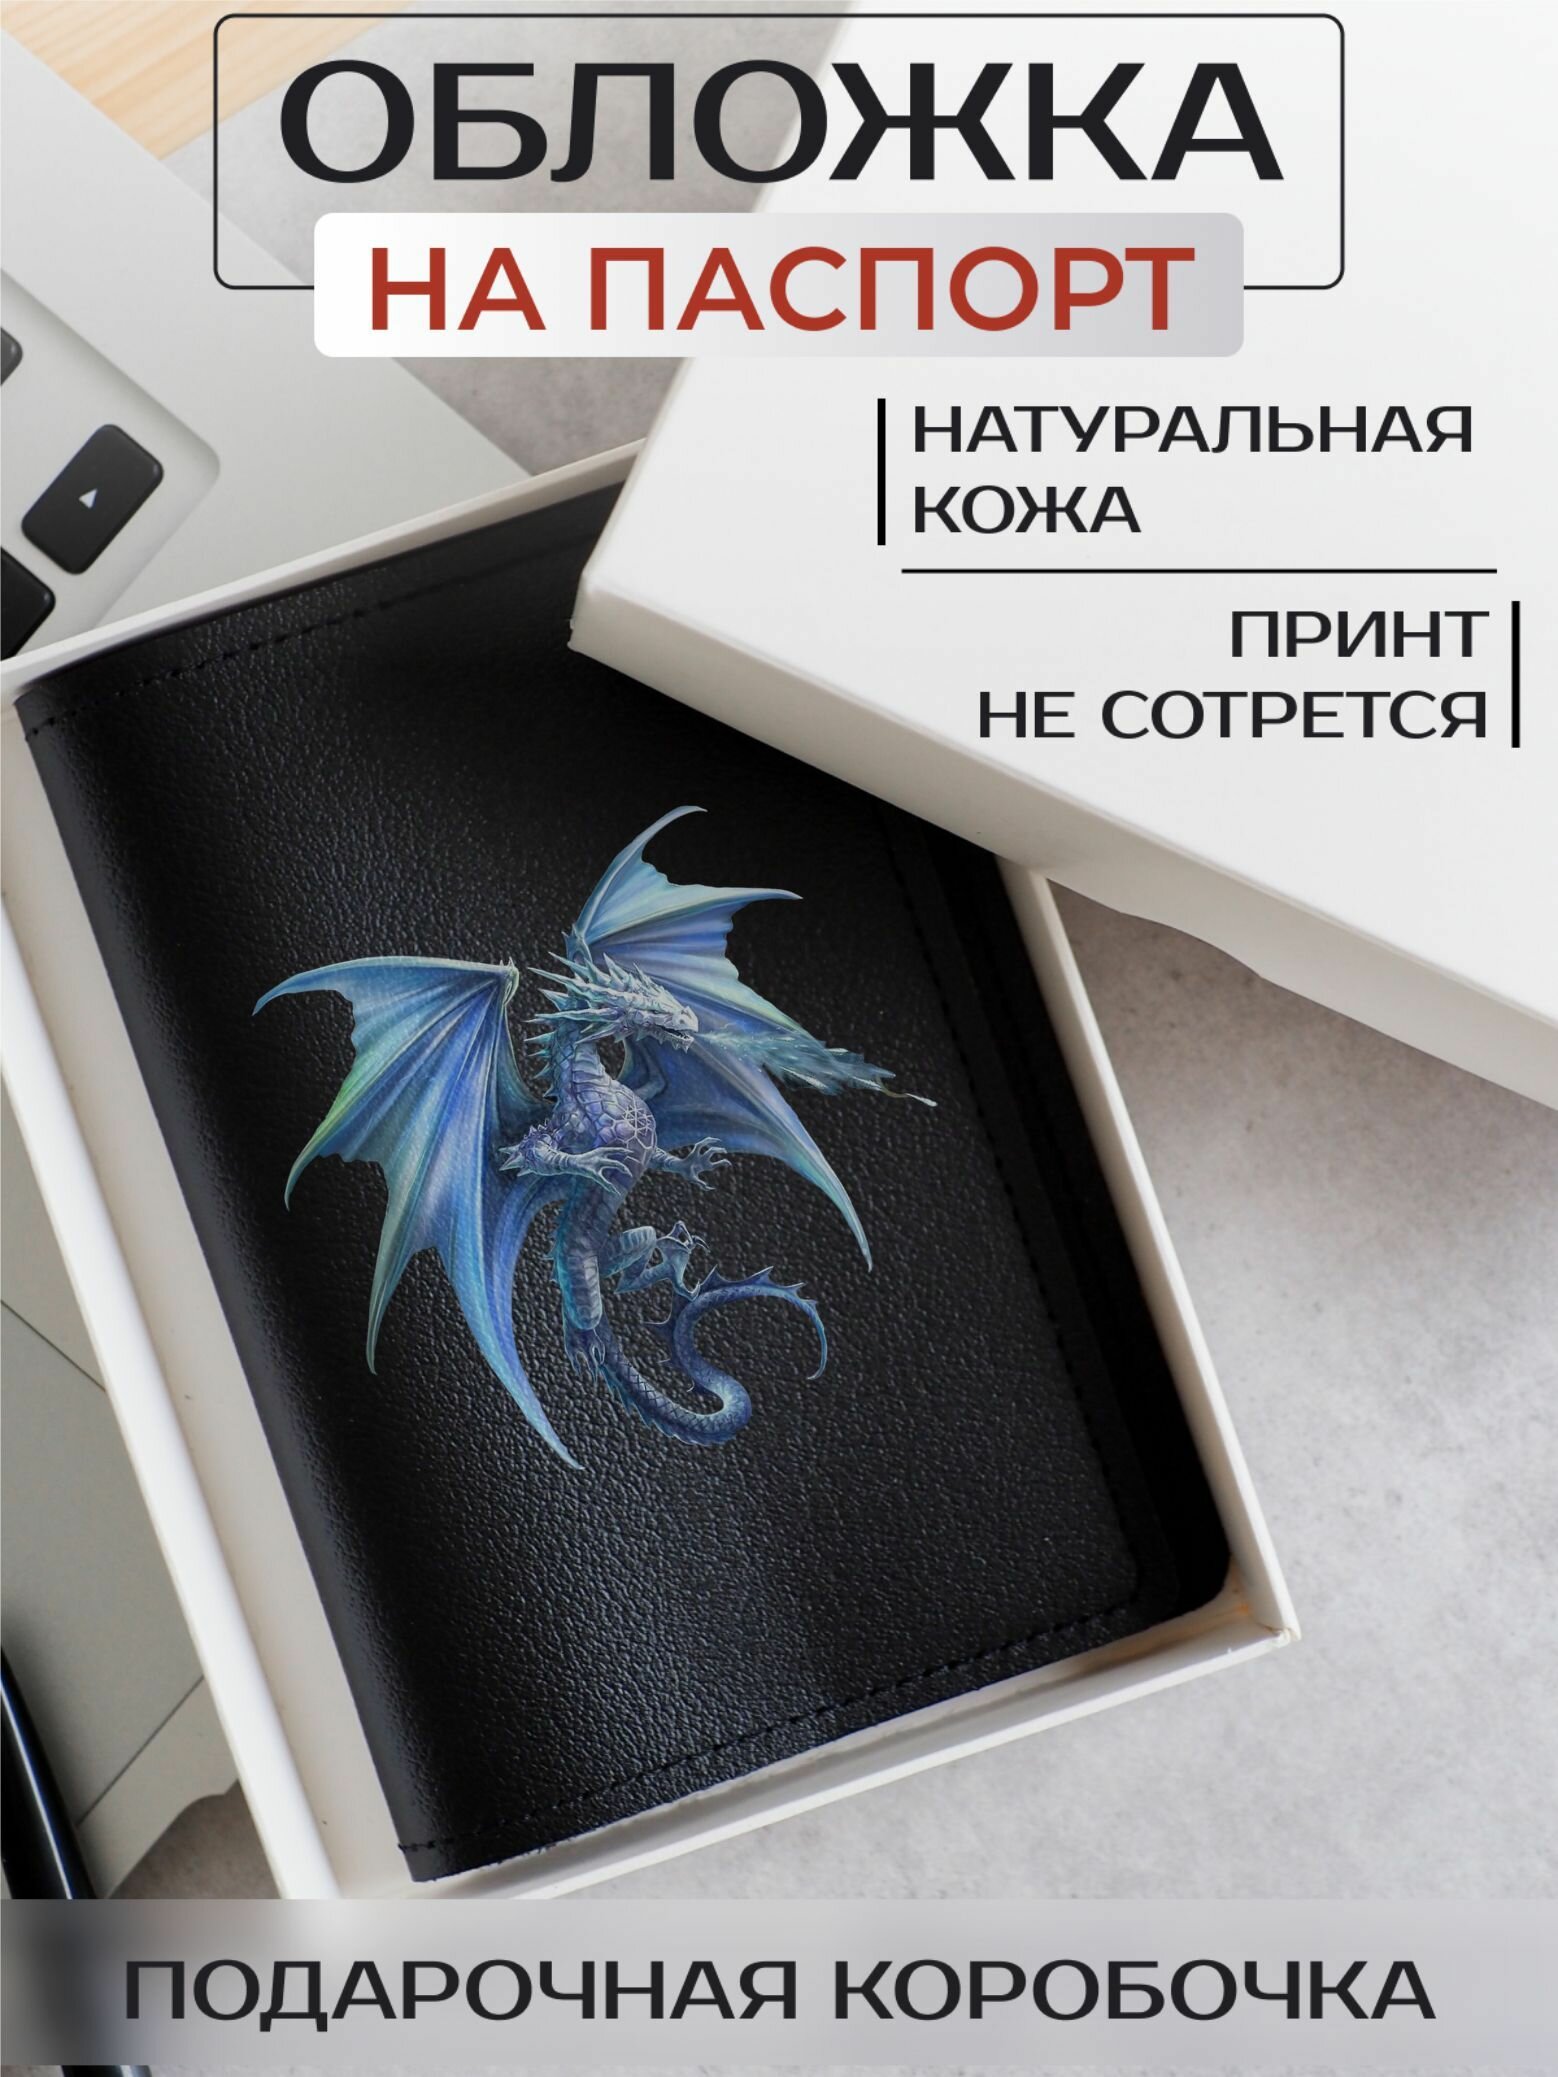 Обложка для паспорта RUSSIAN HandMade Кожаная обложка на паспорт Драконы